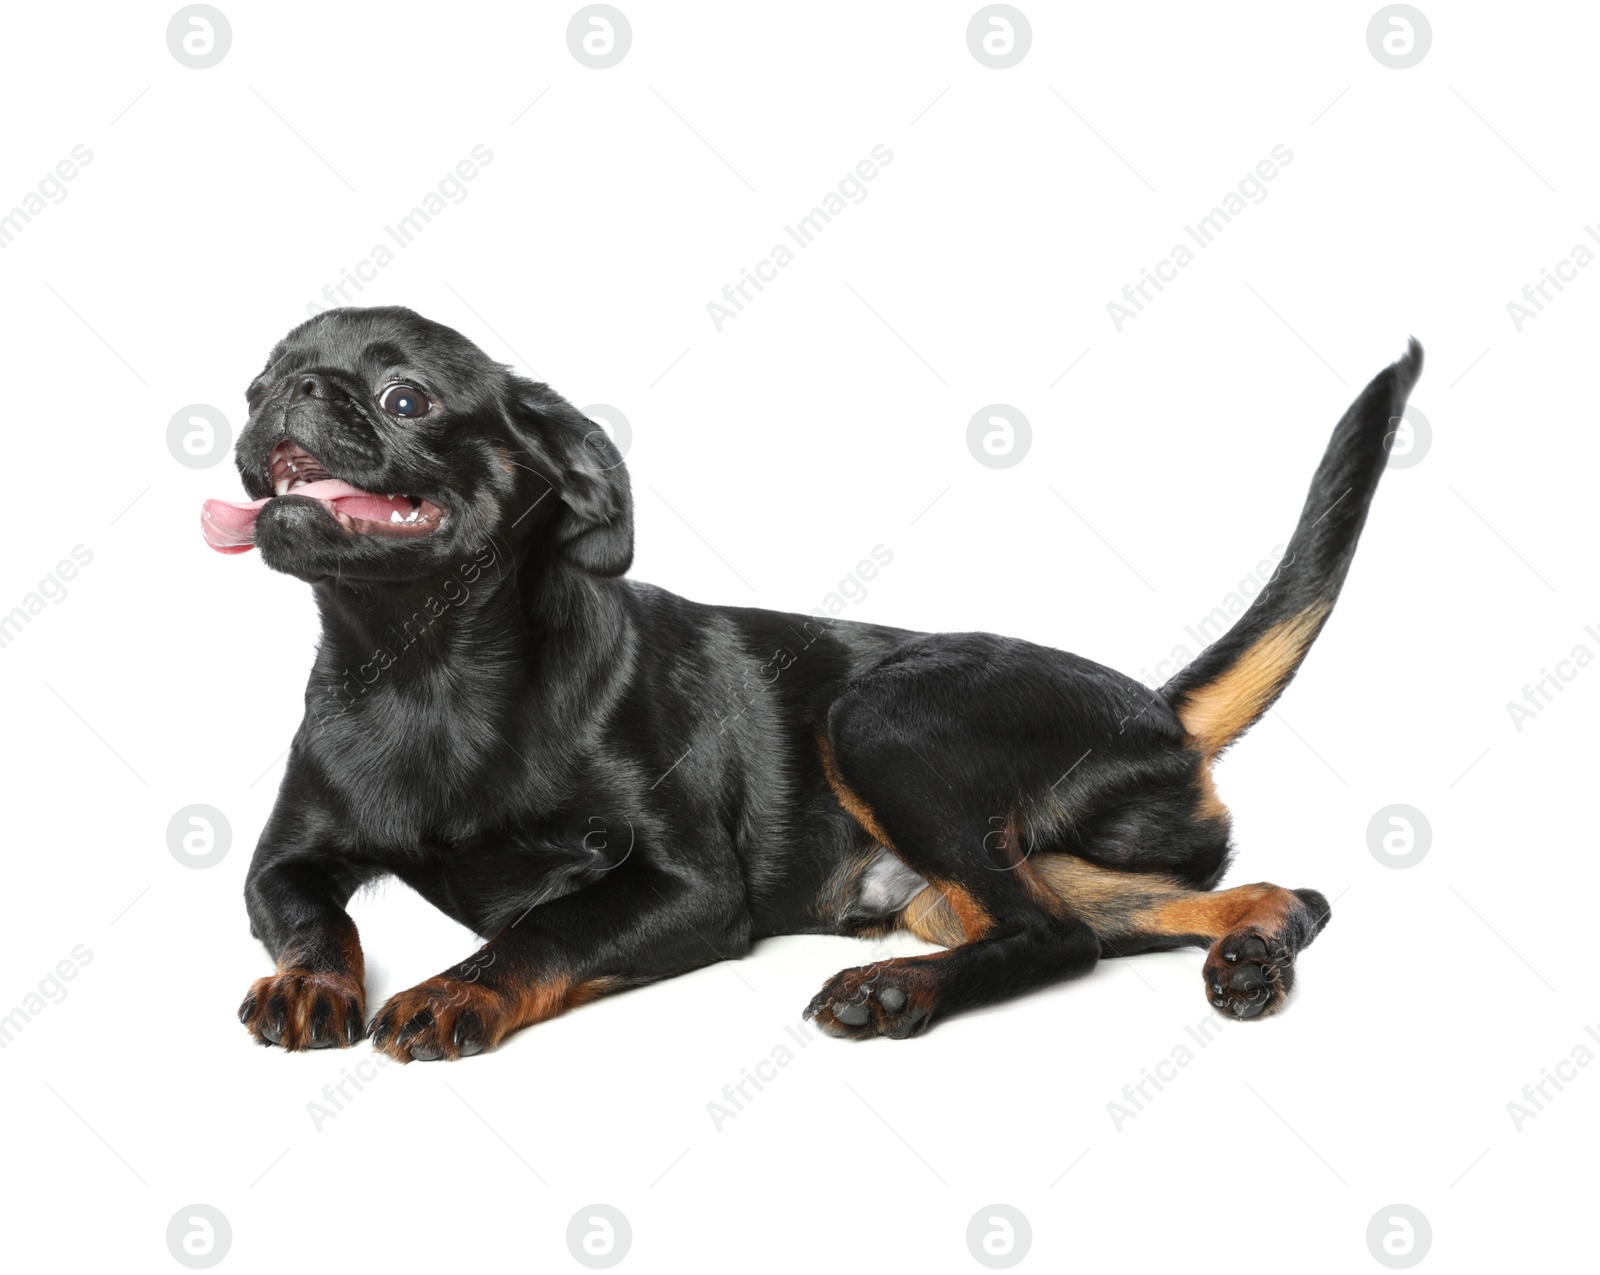 Photo of Adorable black Petit Brabancon dog lying on white background